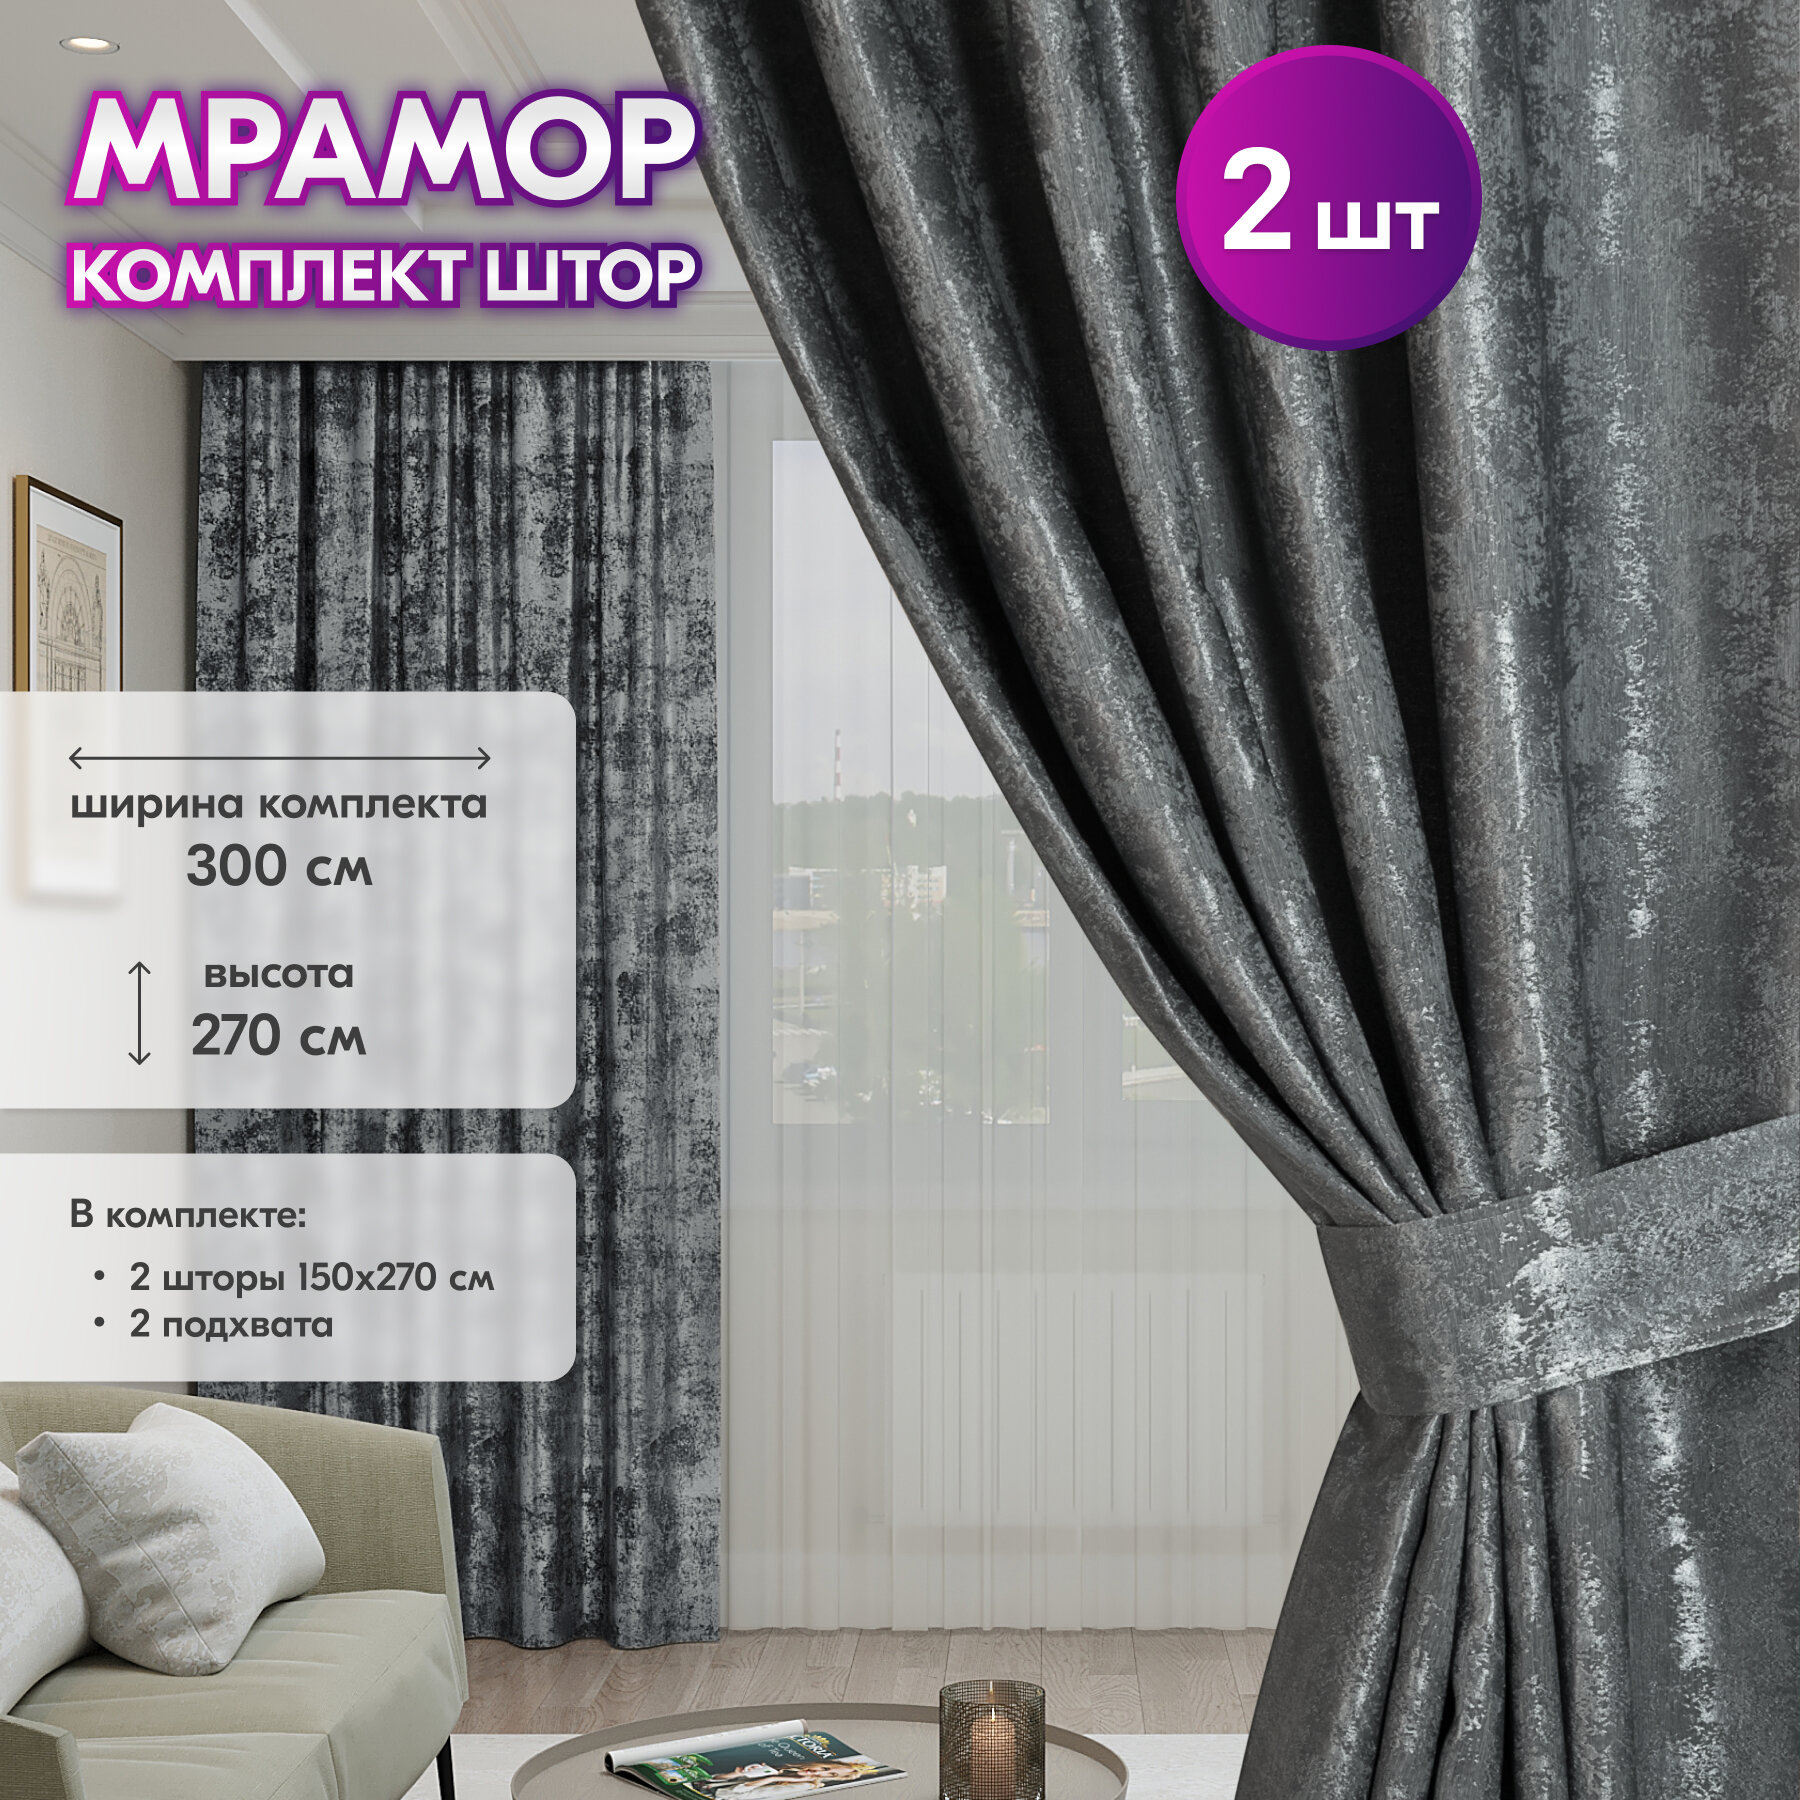 Комплект штор для гостиной Мрамор 150х270 см, с подхватами, темно-серый.